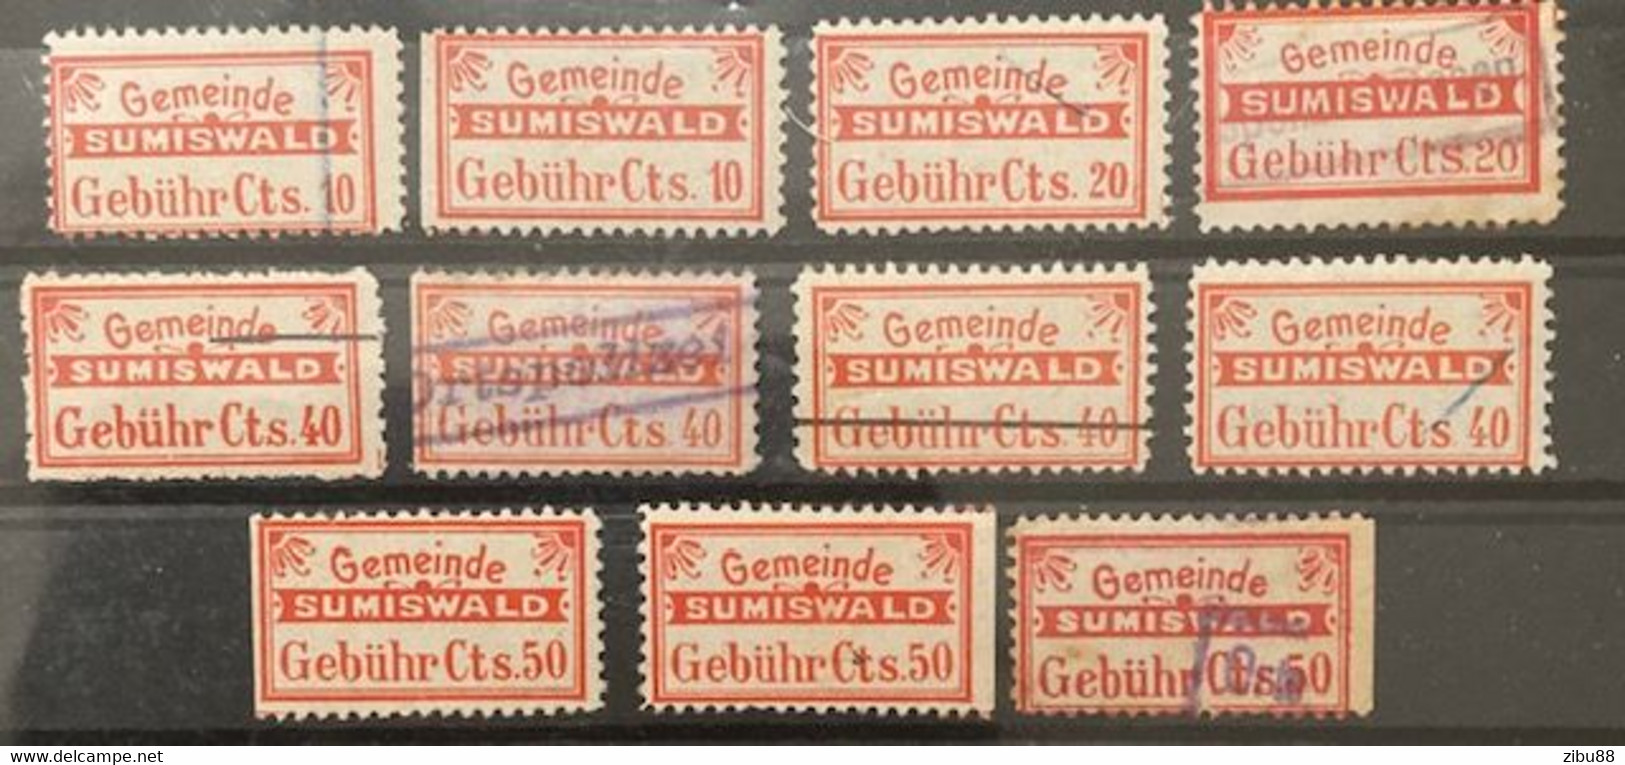 Fiskalmarken / Revenue Stamp Switzerland - Gemeinde Sumiswald BE - Fiscaux